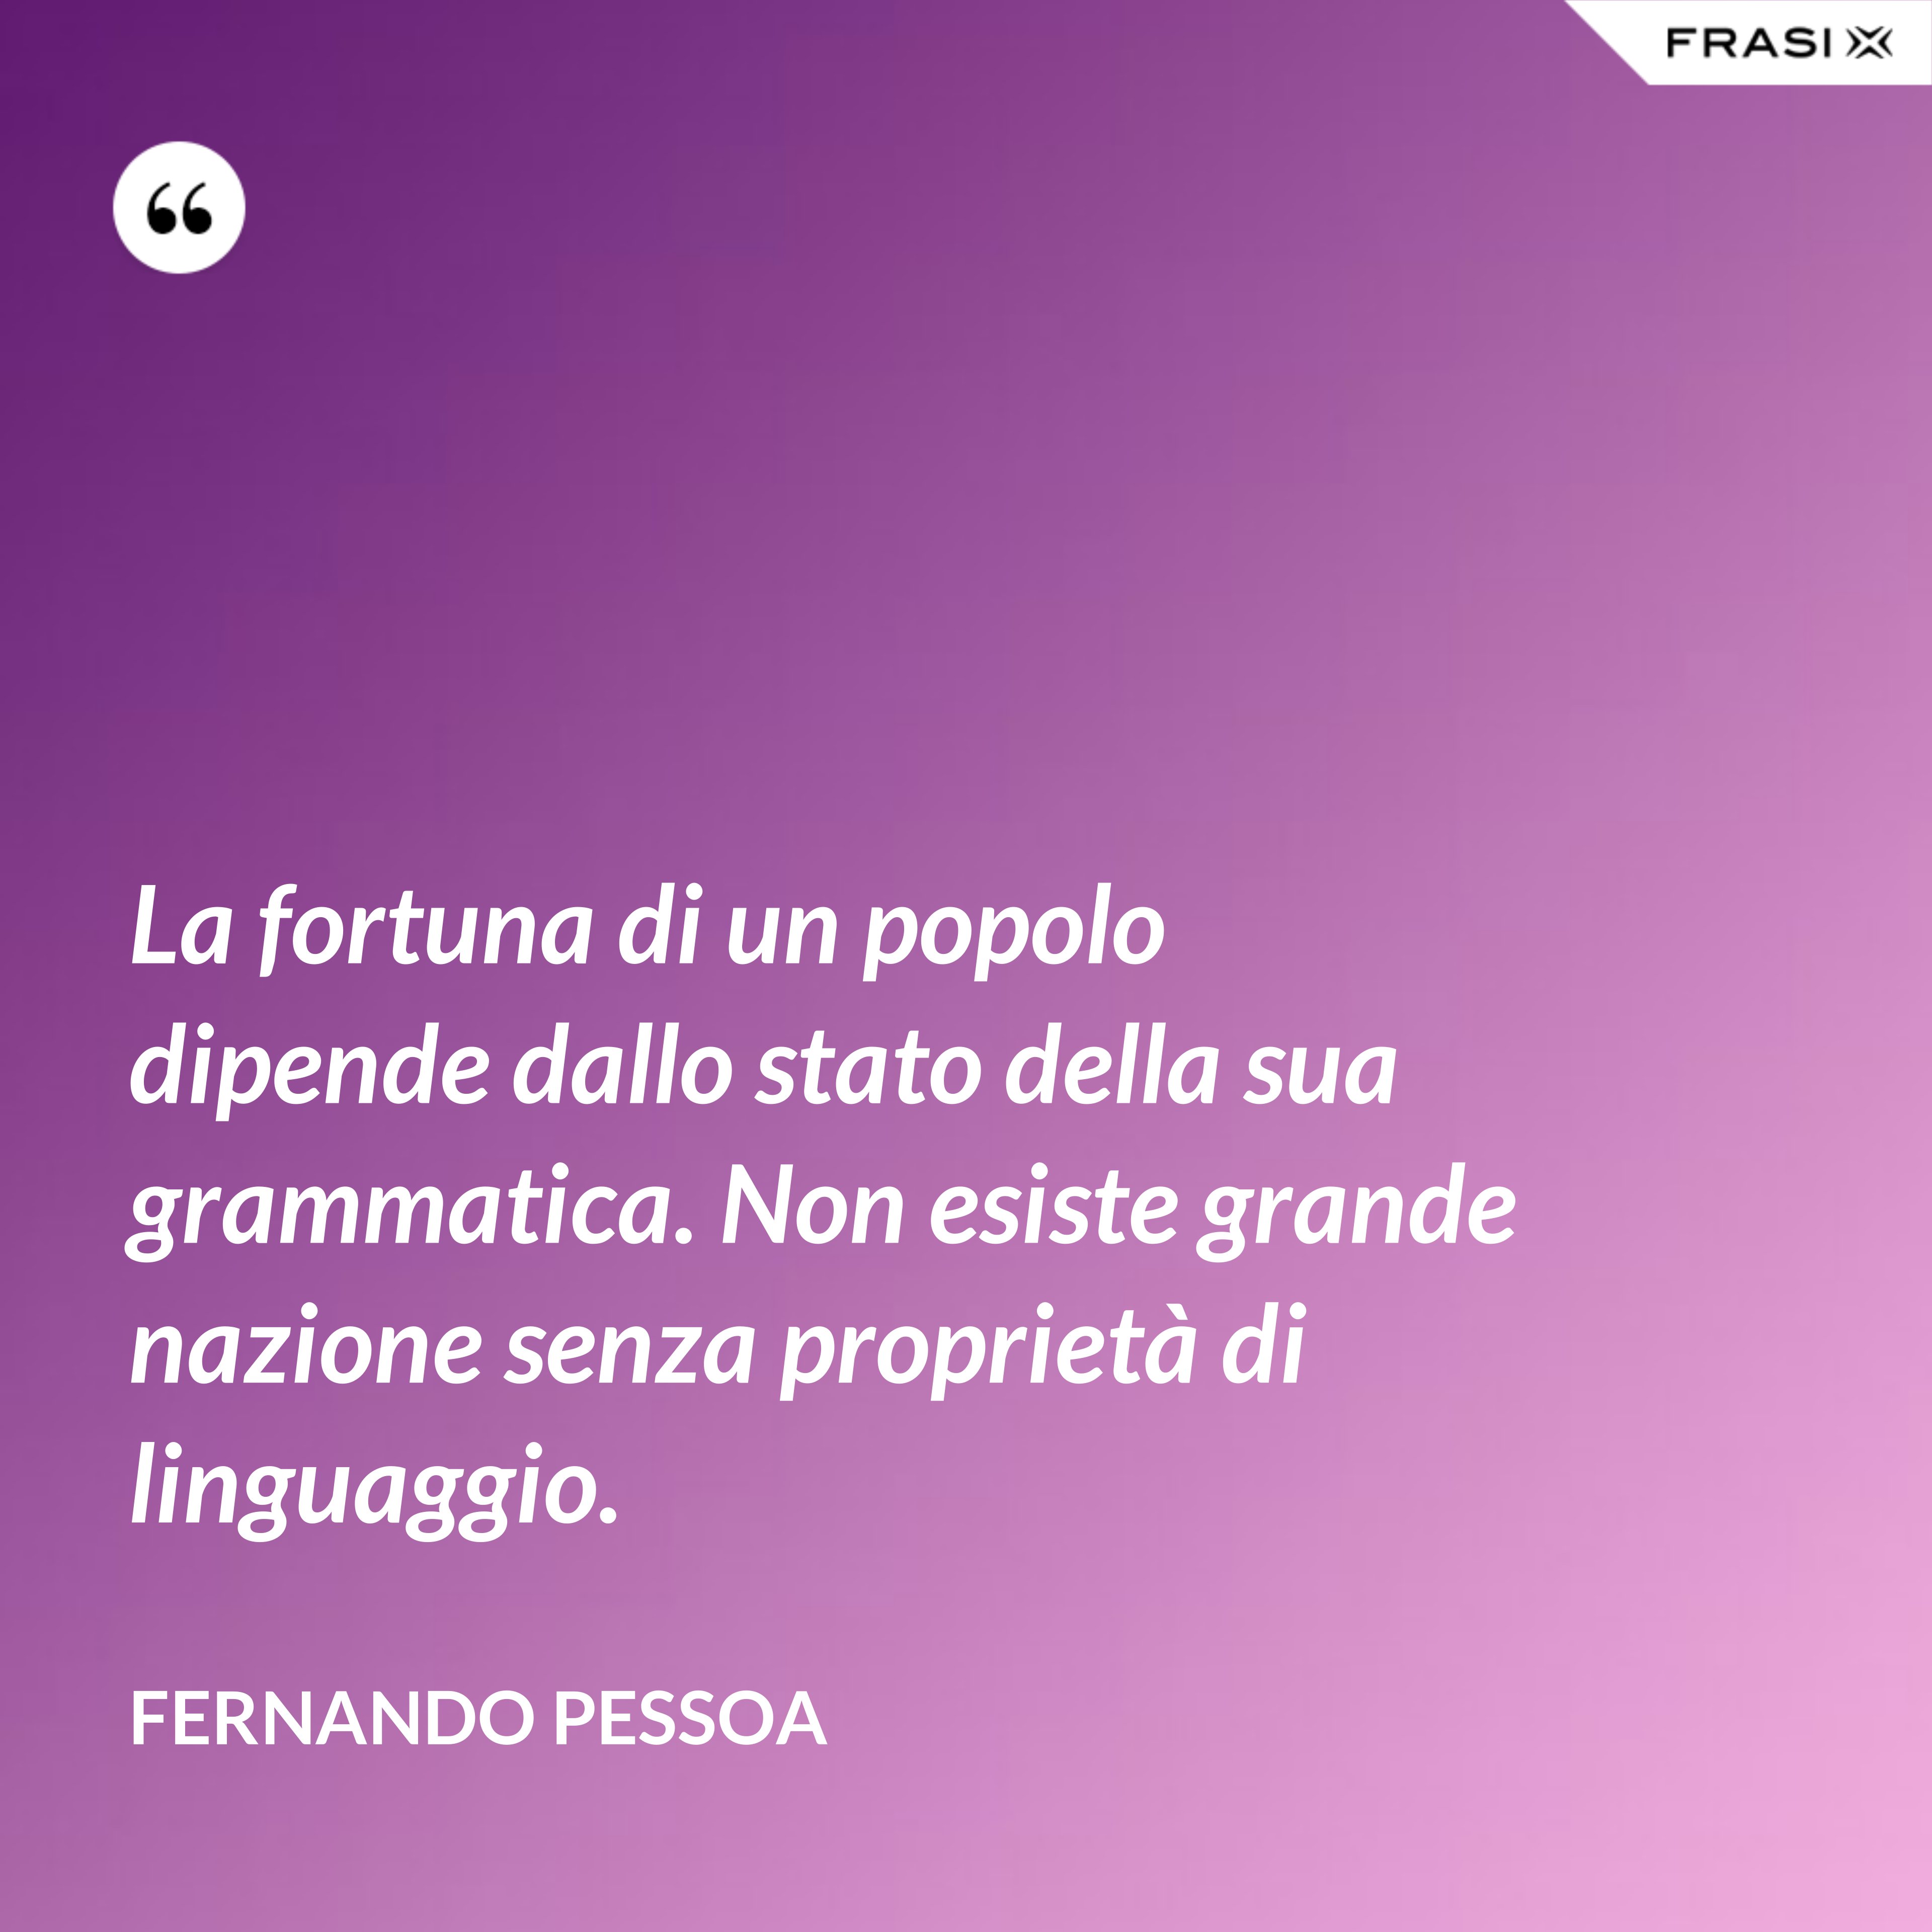 La fortuna di un popolo dipende dallo stato della sua grammatica. Non esiste grande nazione senza proprietà di linguaggio. - Fernando Pessoa